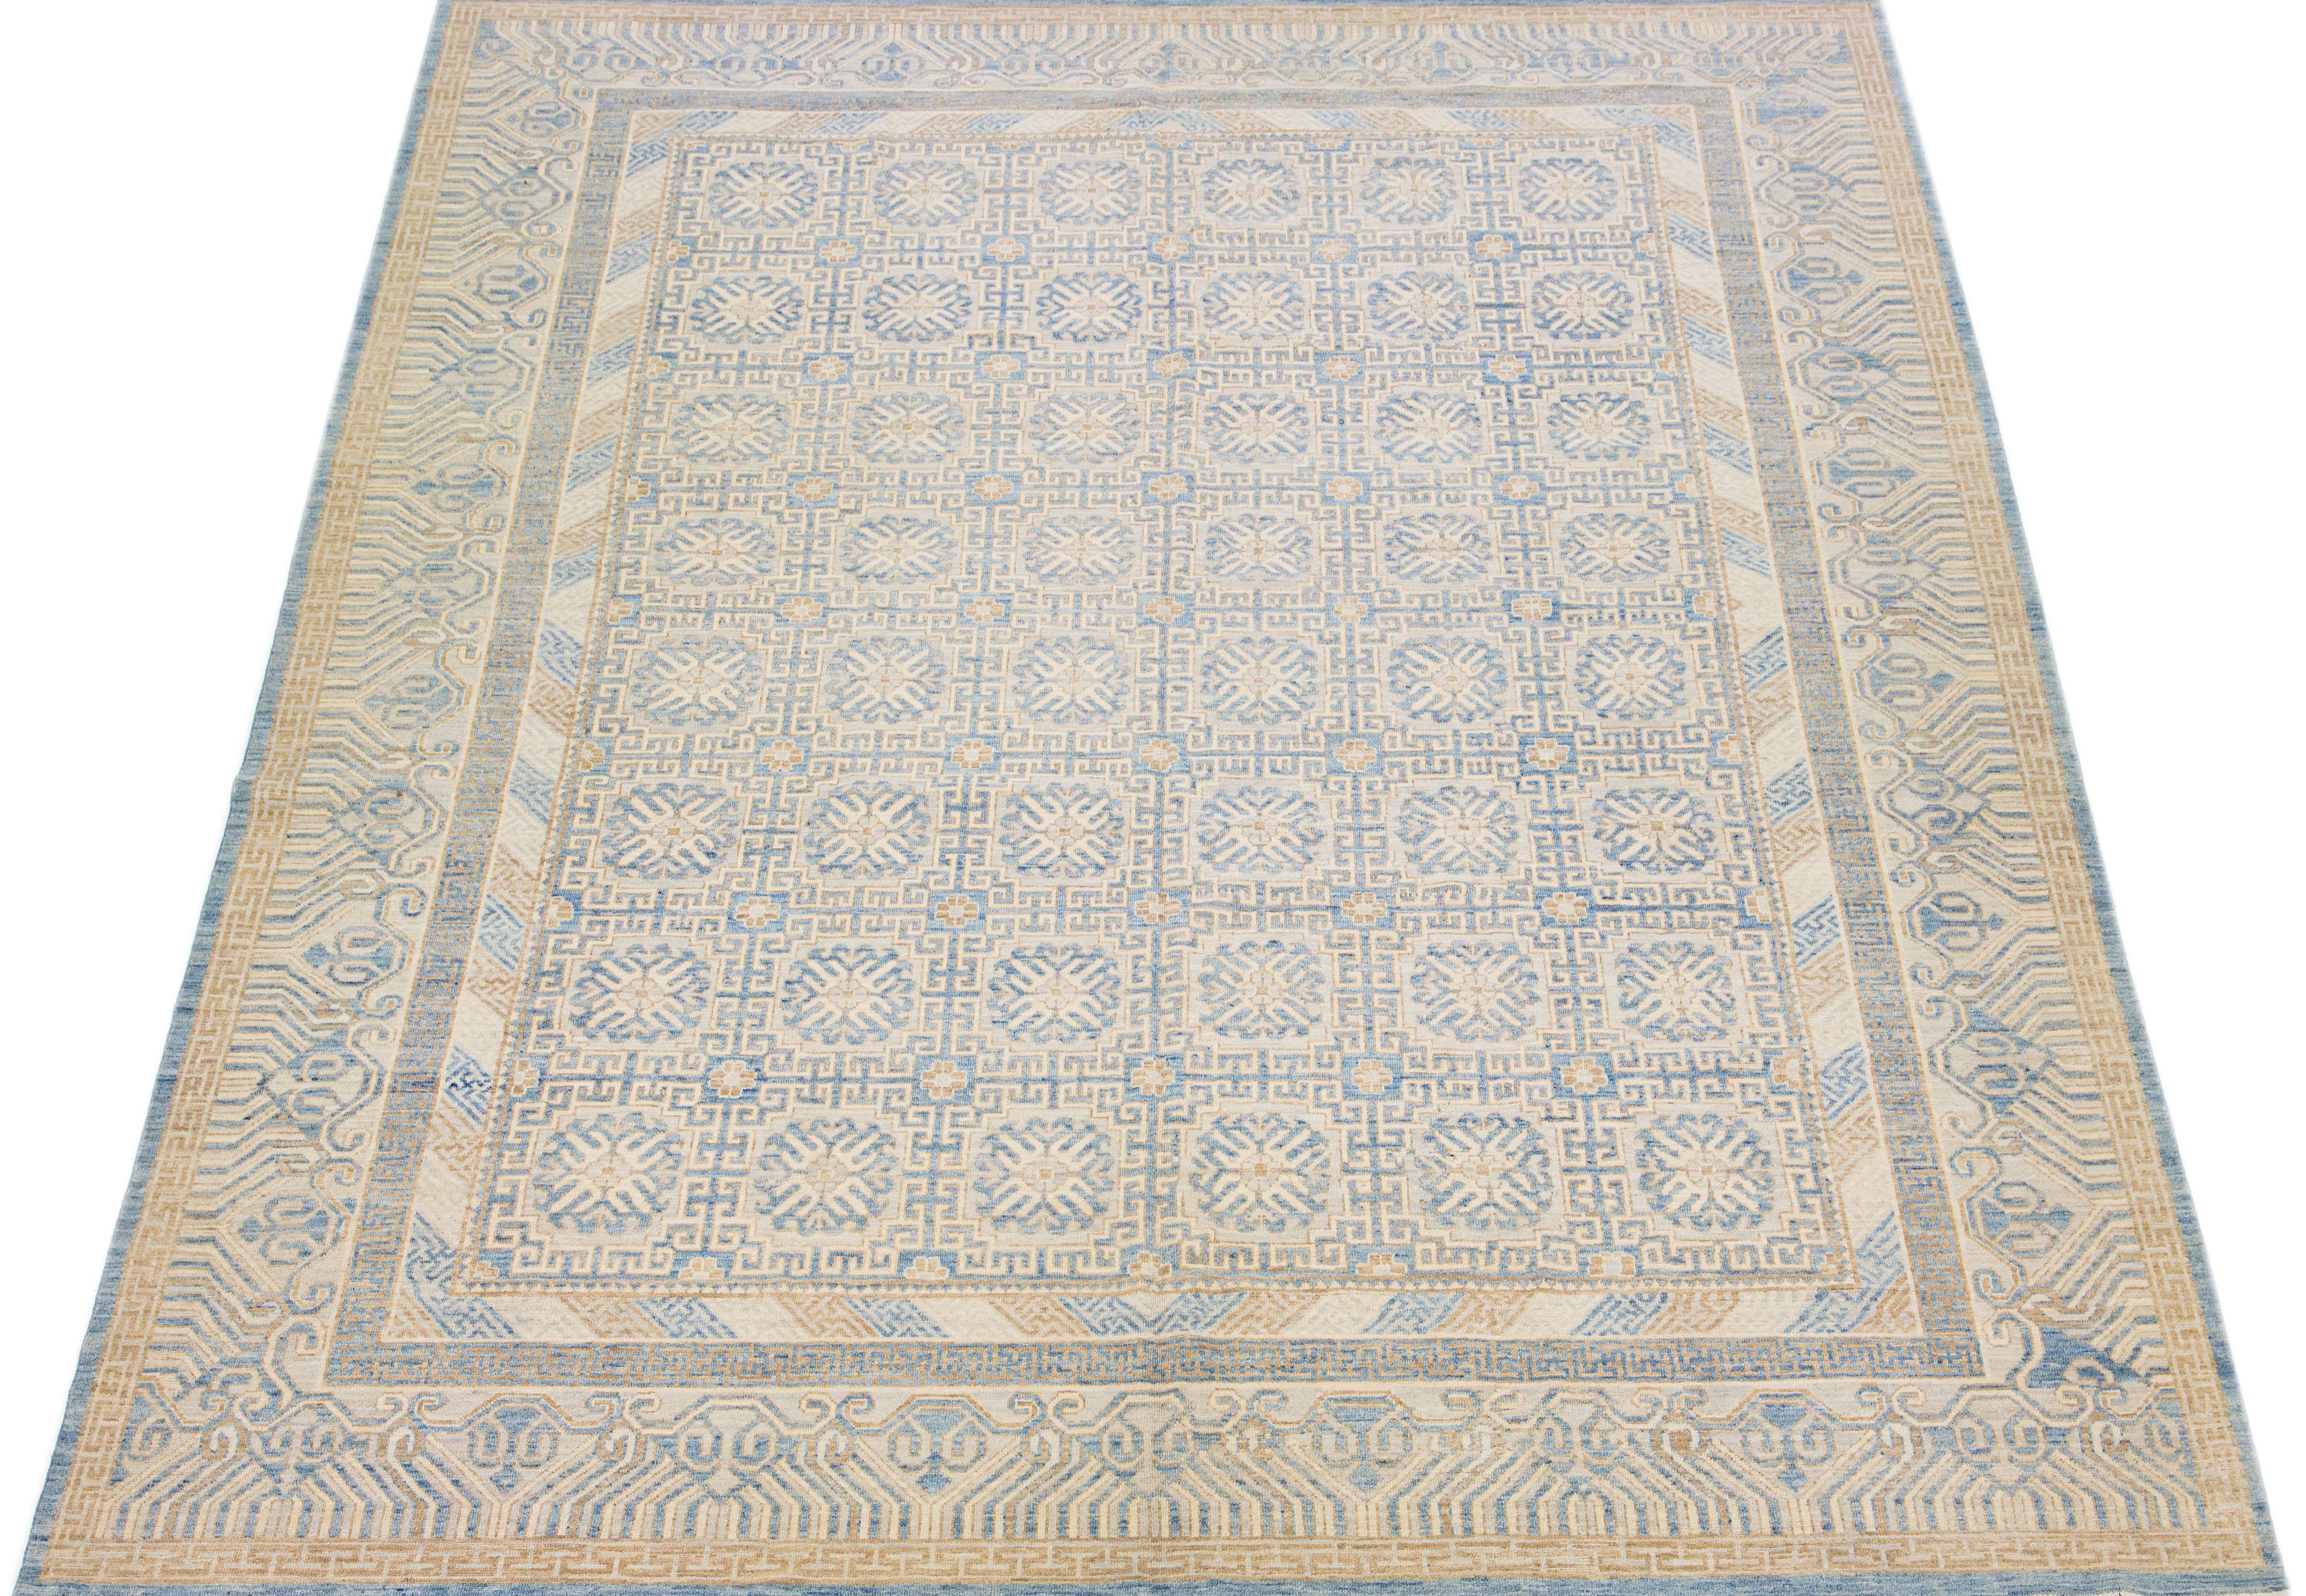 Schöner moderner Khotan Ton-in-Ton handgeknüpfter Wollteppich mit einem beigen Farbfeld. Dieses Stück hat blaue und braune Akzente in einem wunderschönen, miteinander verbundenen Medaillon-Rosettenmuster.

Dieser Teppich misst 12' x 15'4